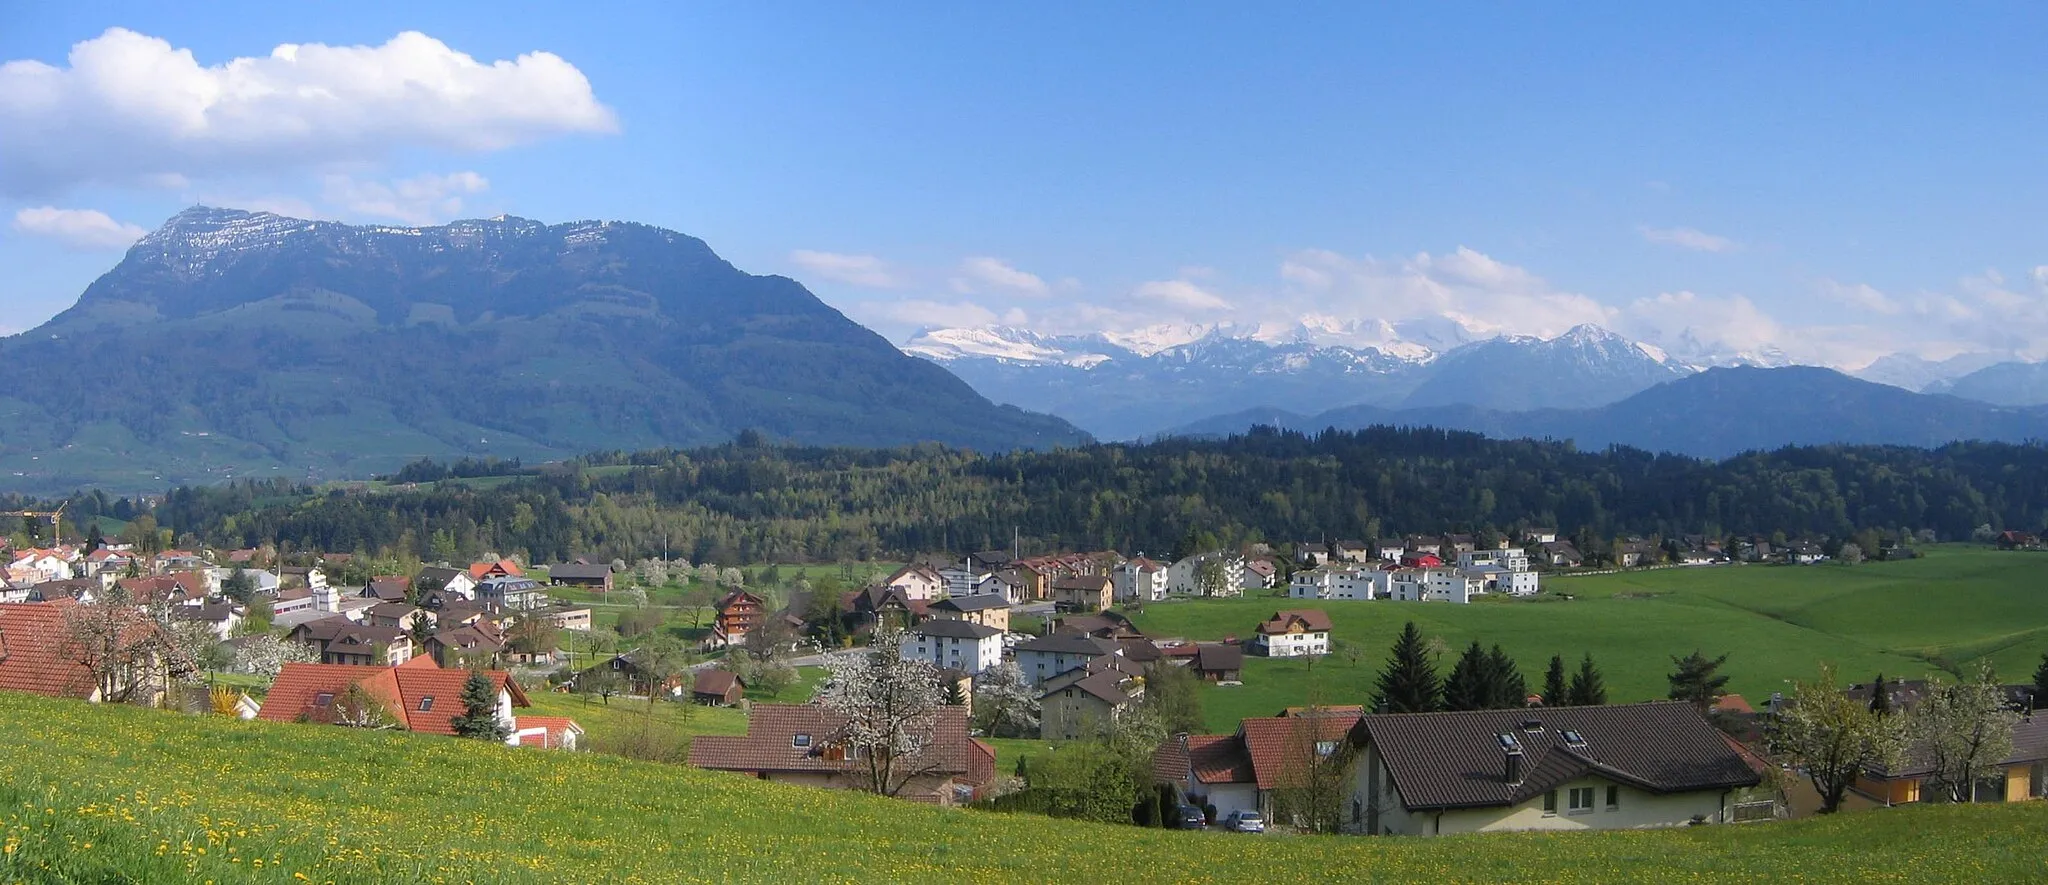 Obrázek Zentralschweiz